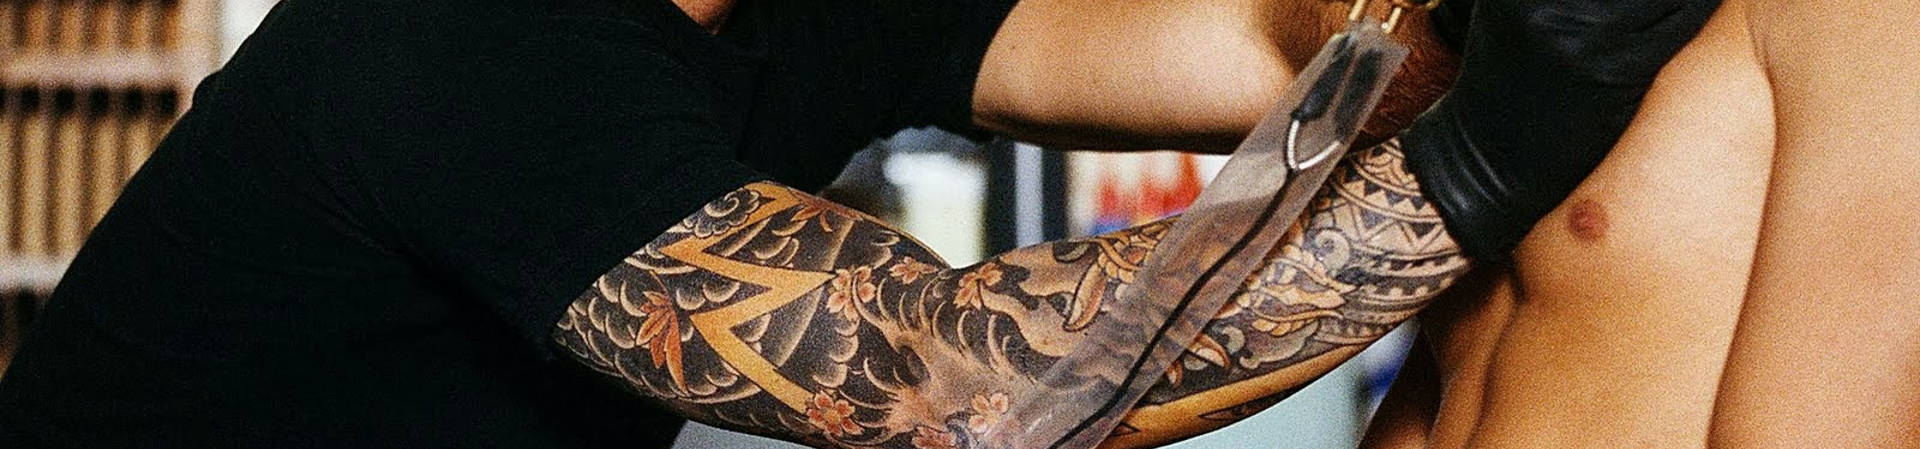 Tatuajes henna